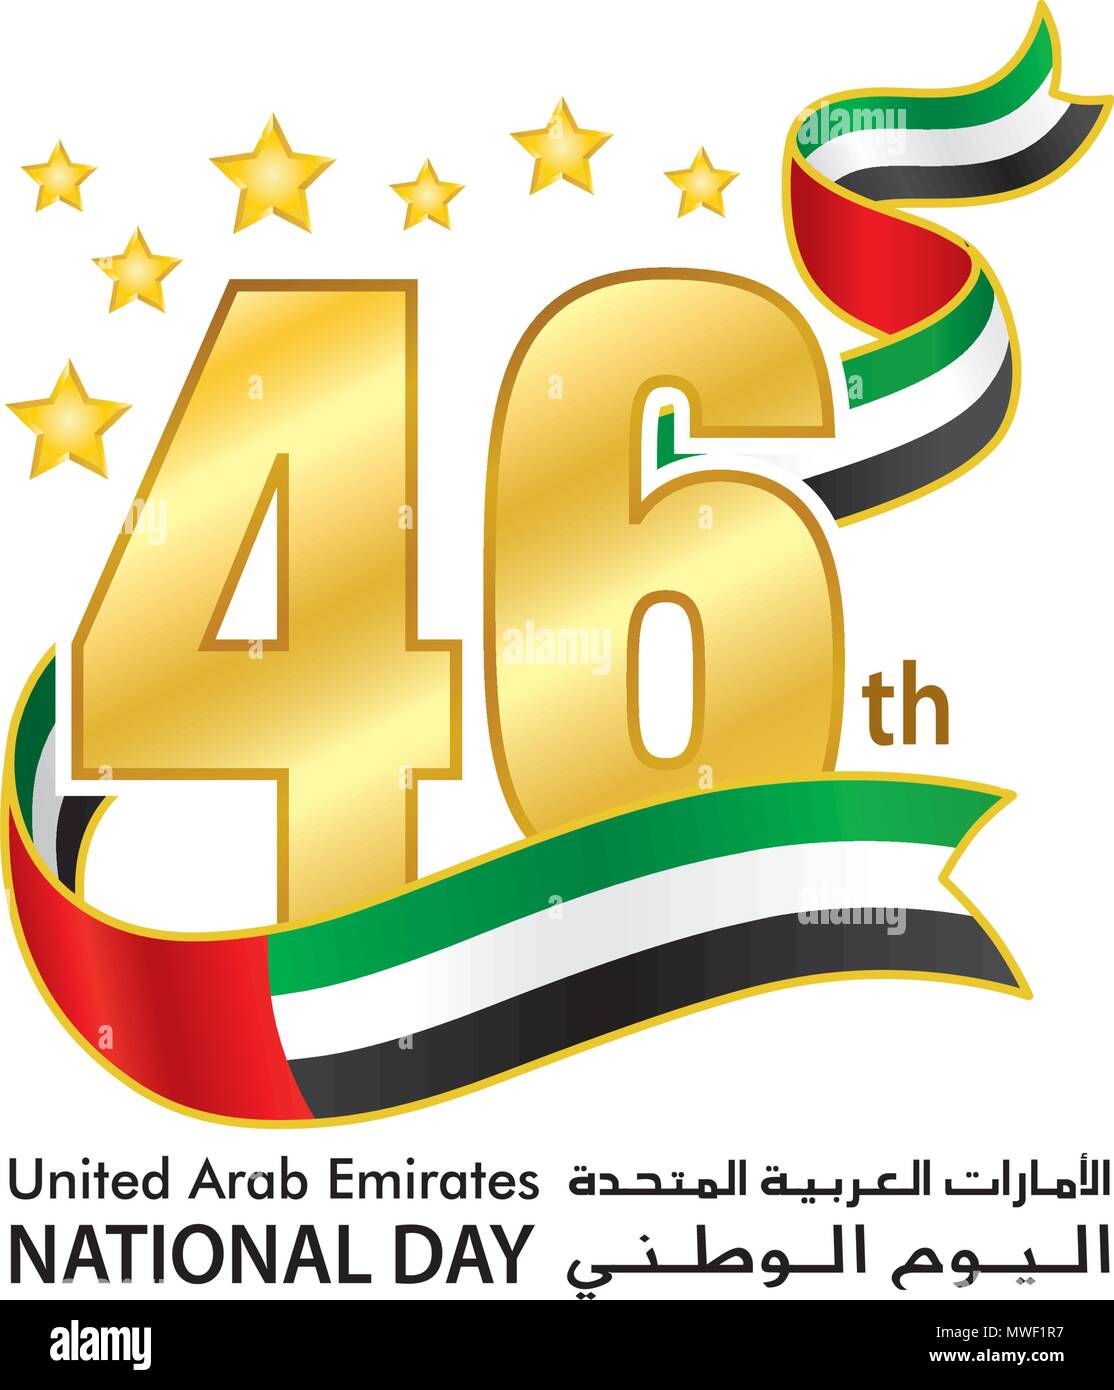 Emirati Arabi Uniti XLVI Giornata Nazionale Logo, emblemi tipografiche & badge con sfondo bianco, un iscrizione in arabo e inglese "Emirati arabi uniti, Giornata Nazionale' Illustrazione Vettoriale